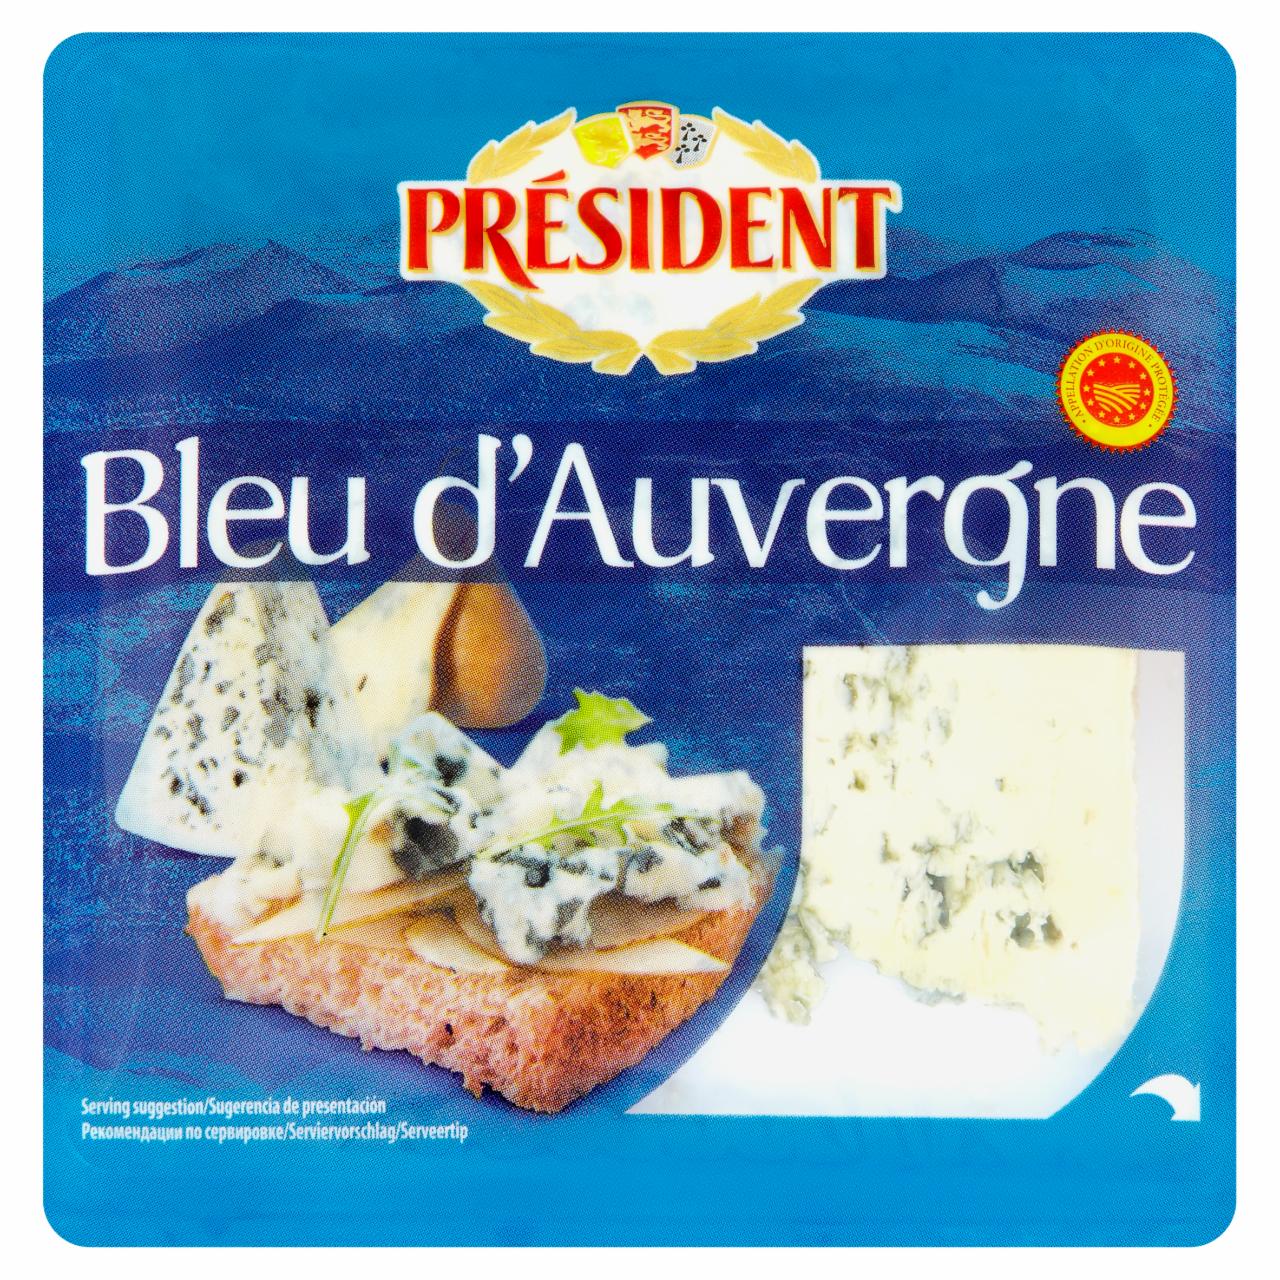 Képek - Président Bleu d'Auvergne félkemény sajt 100 g